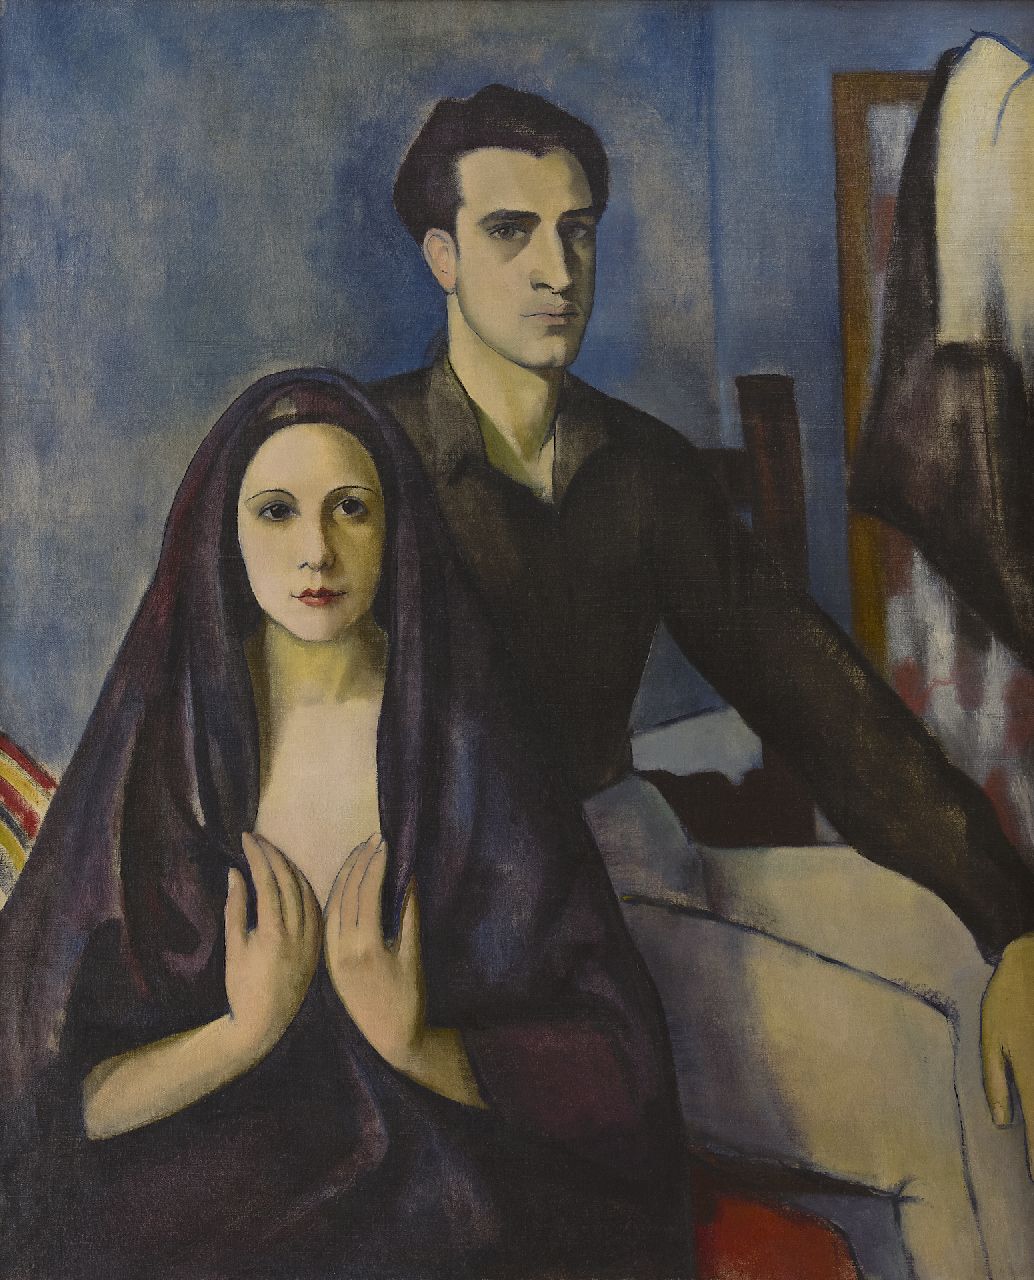 Basch E.  | Edith Basch, Jong echtpaar, olieverf op doek 112,2 x 95,5 cm